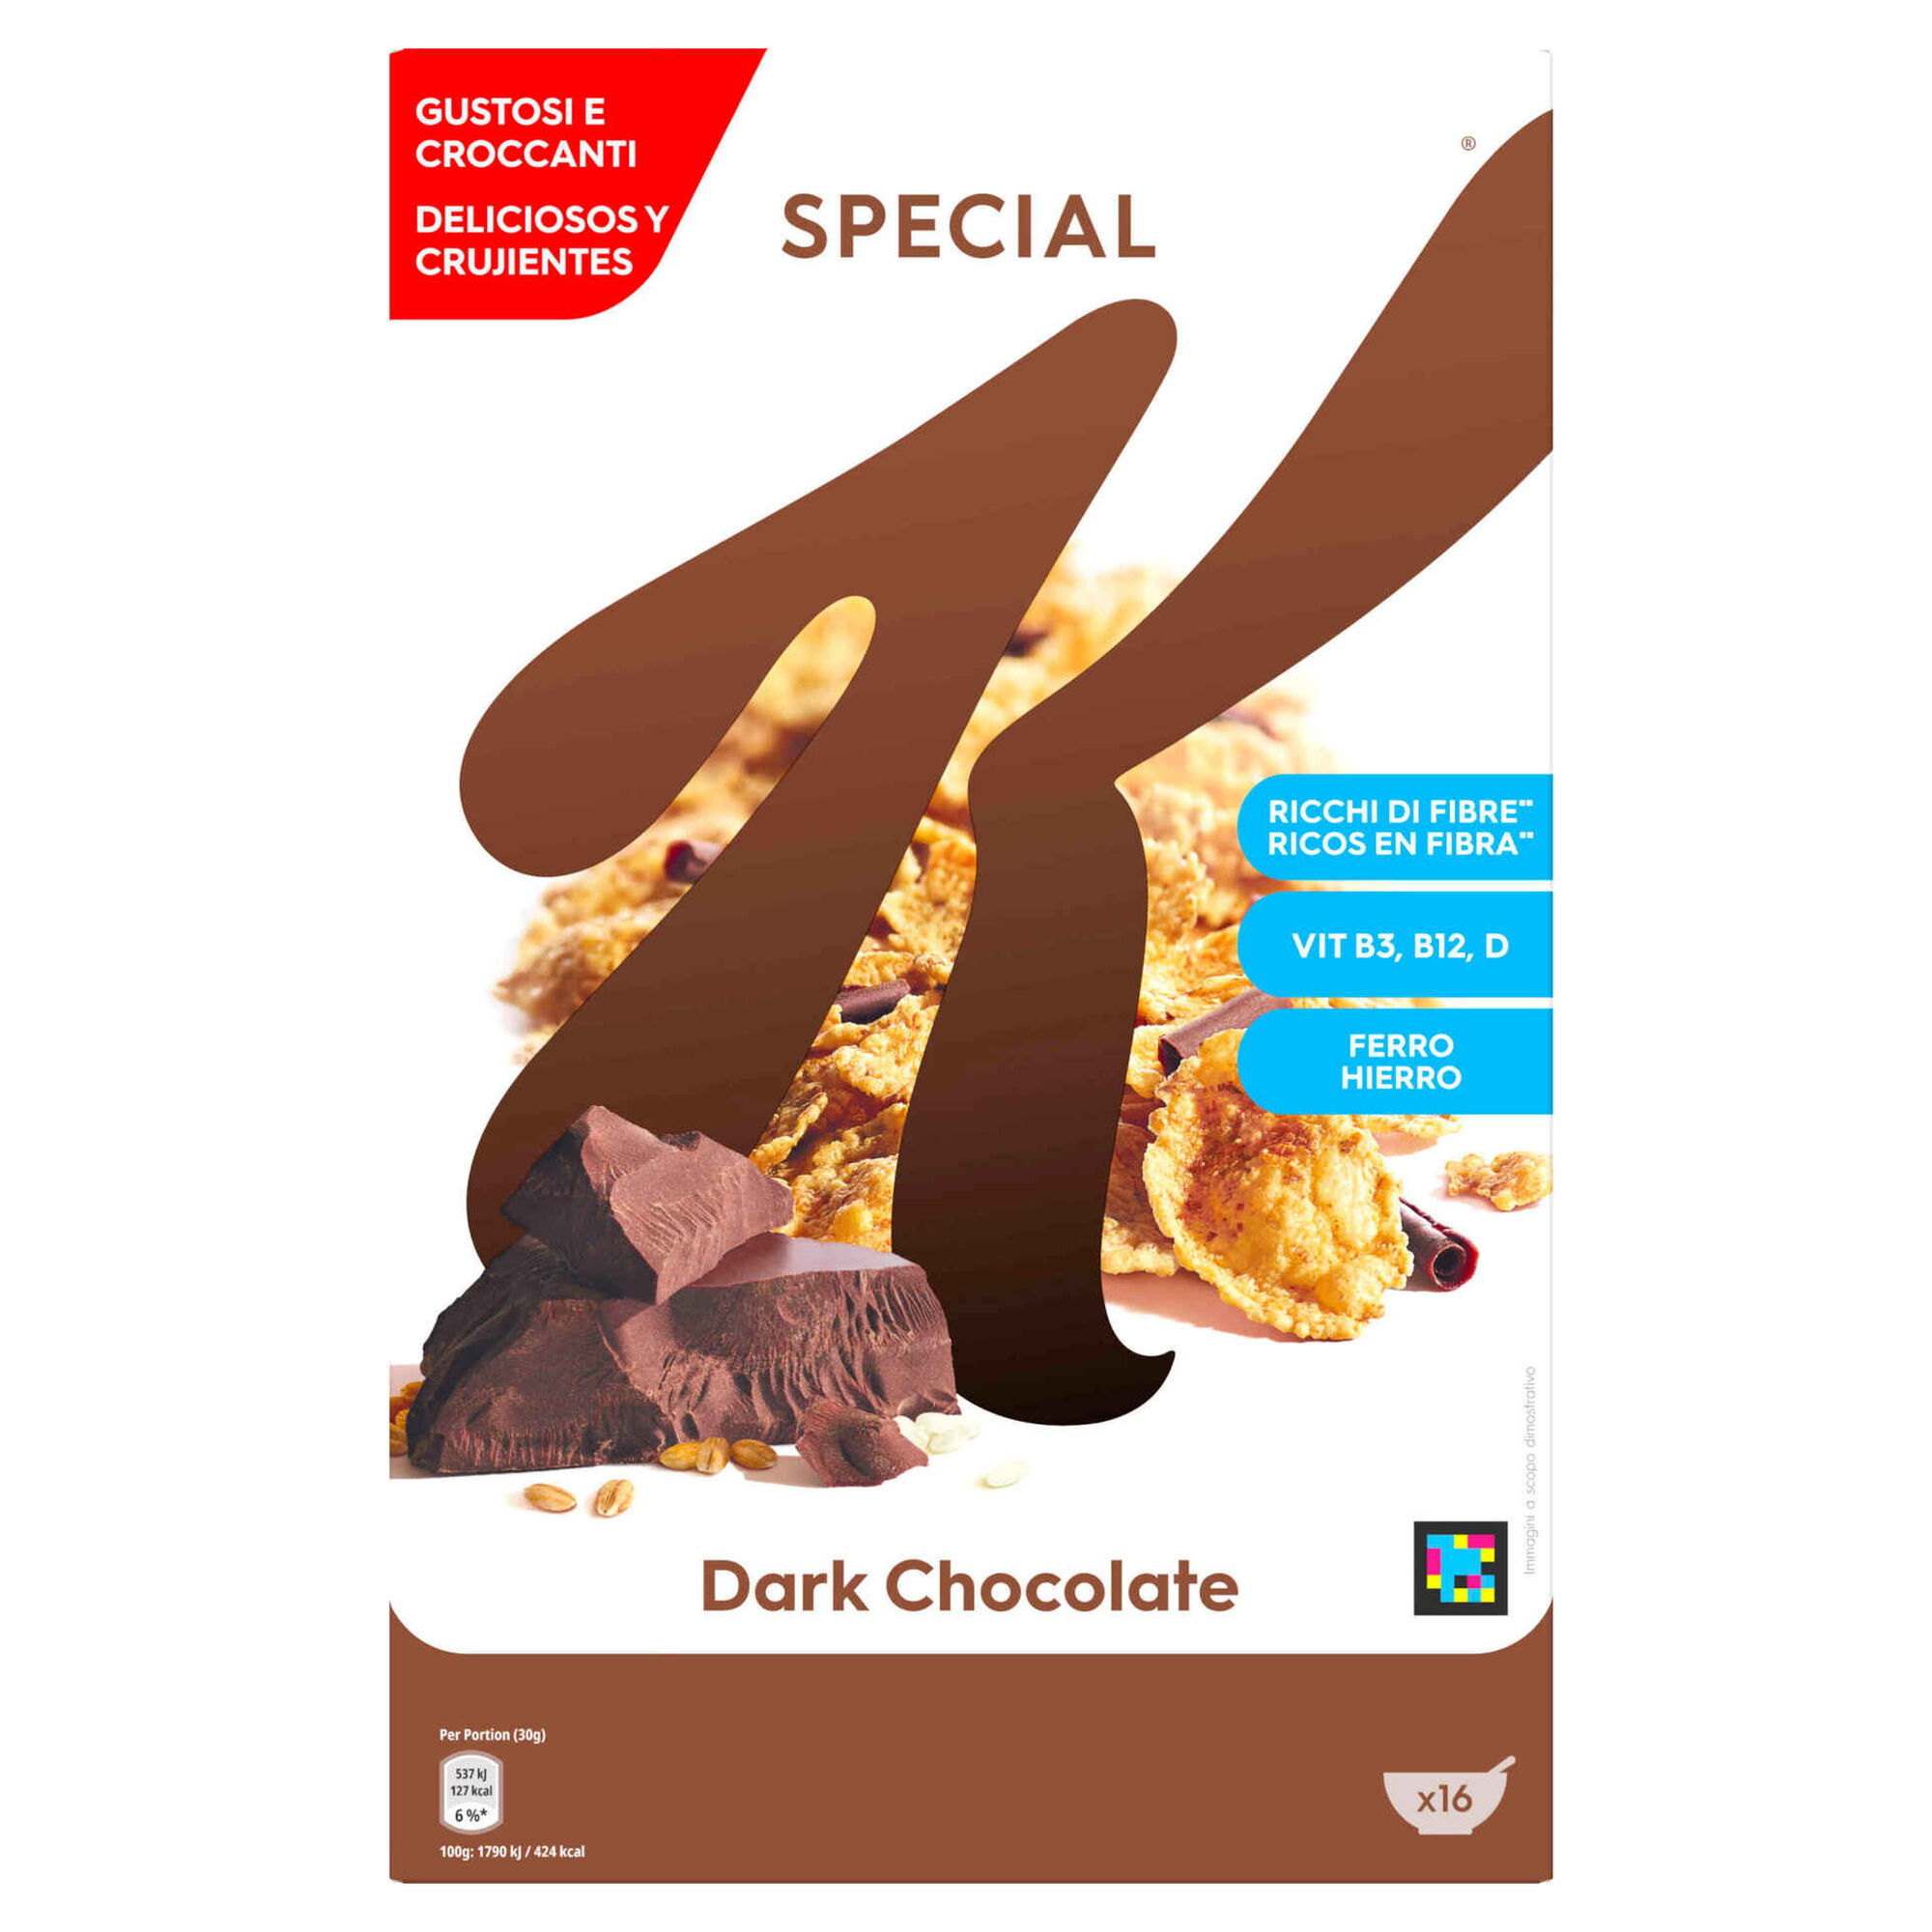 Cereais Special K Chocolate